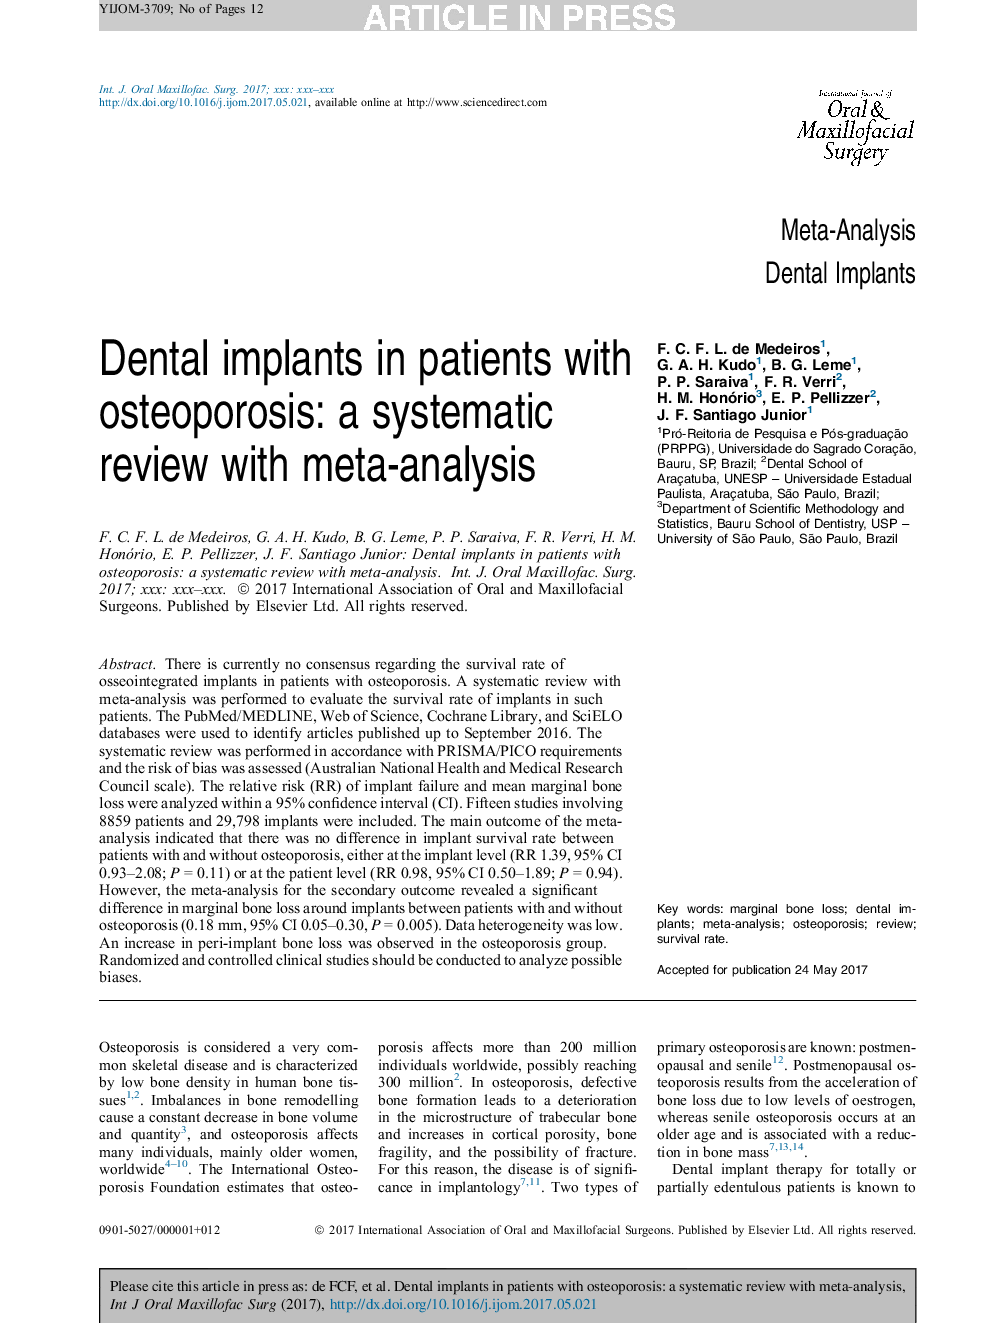 ایمپلنت های دندانی در بیماران مبتلا به پوکی استخوان: بررسی سیستماتیک با متاآنالیز 